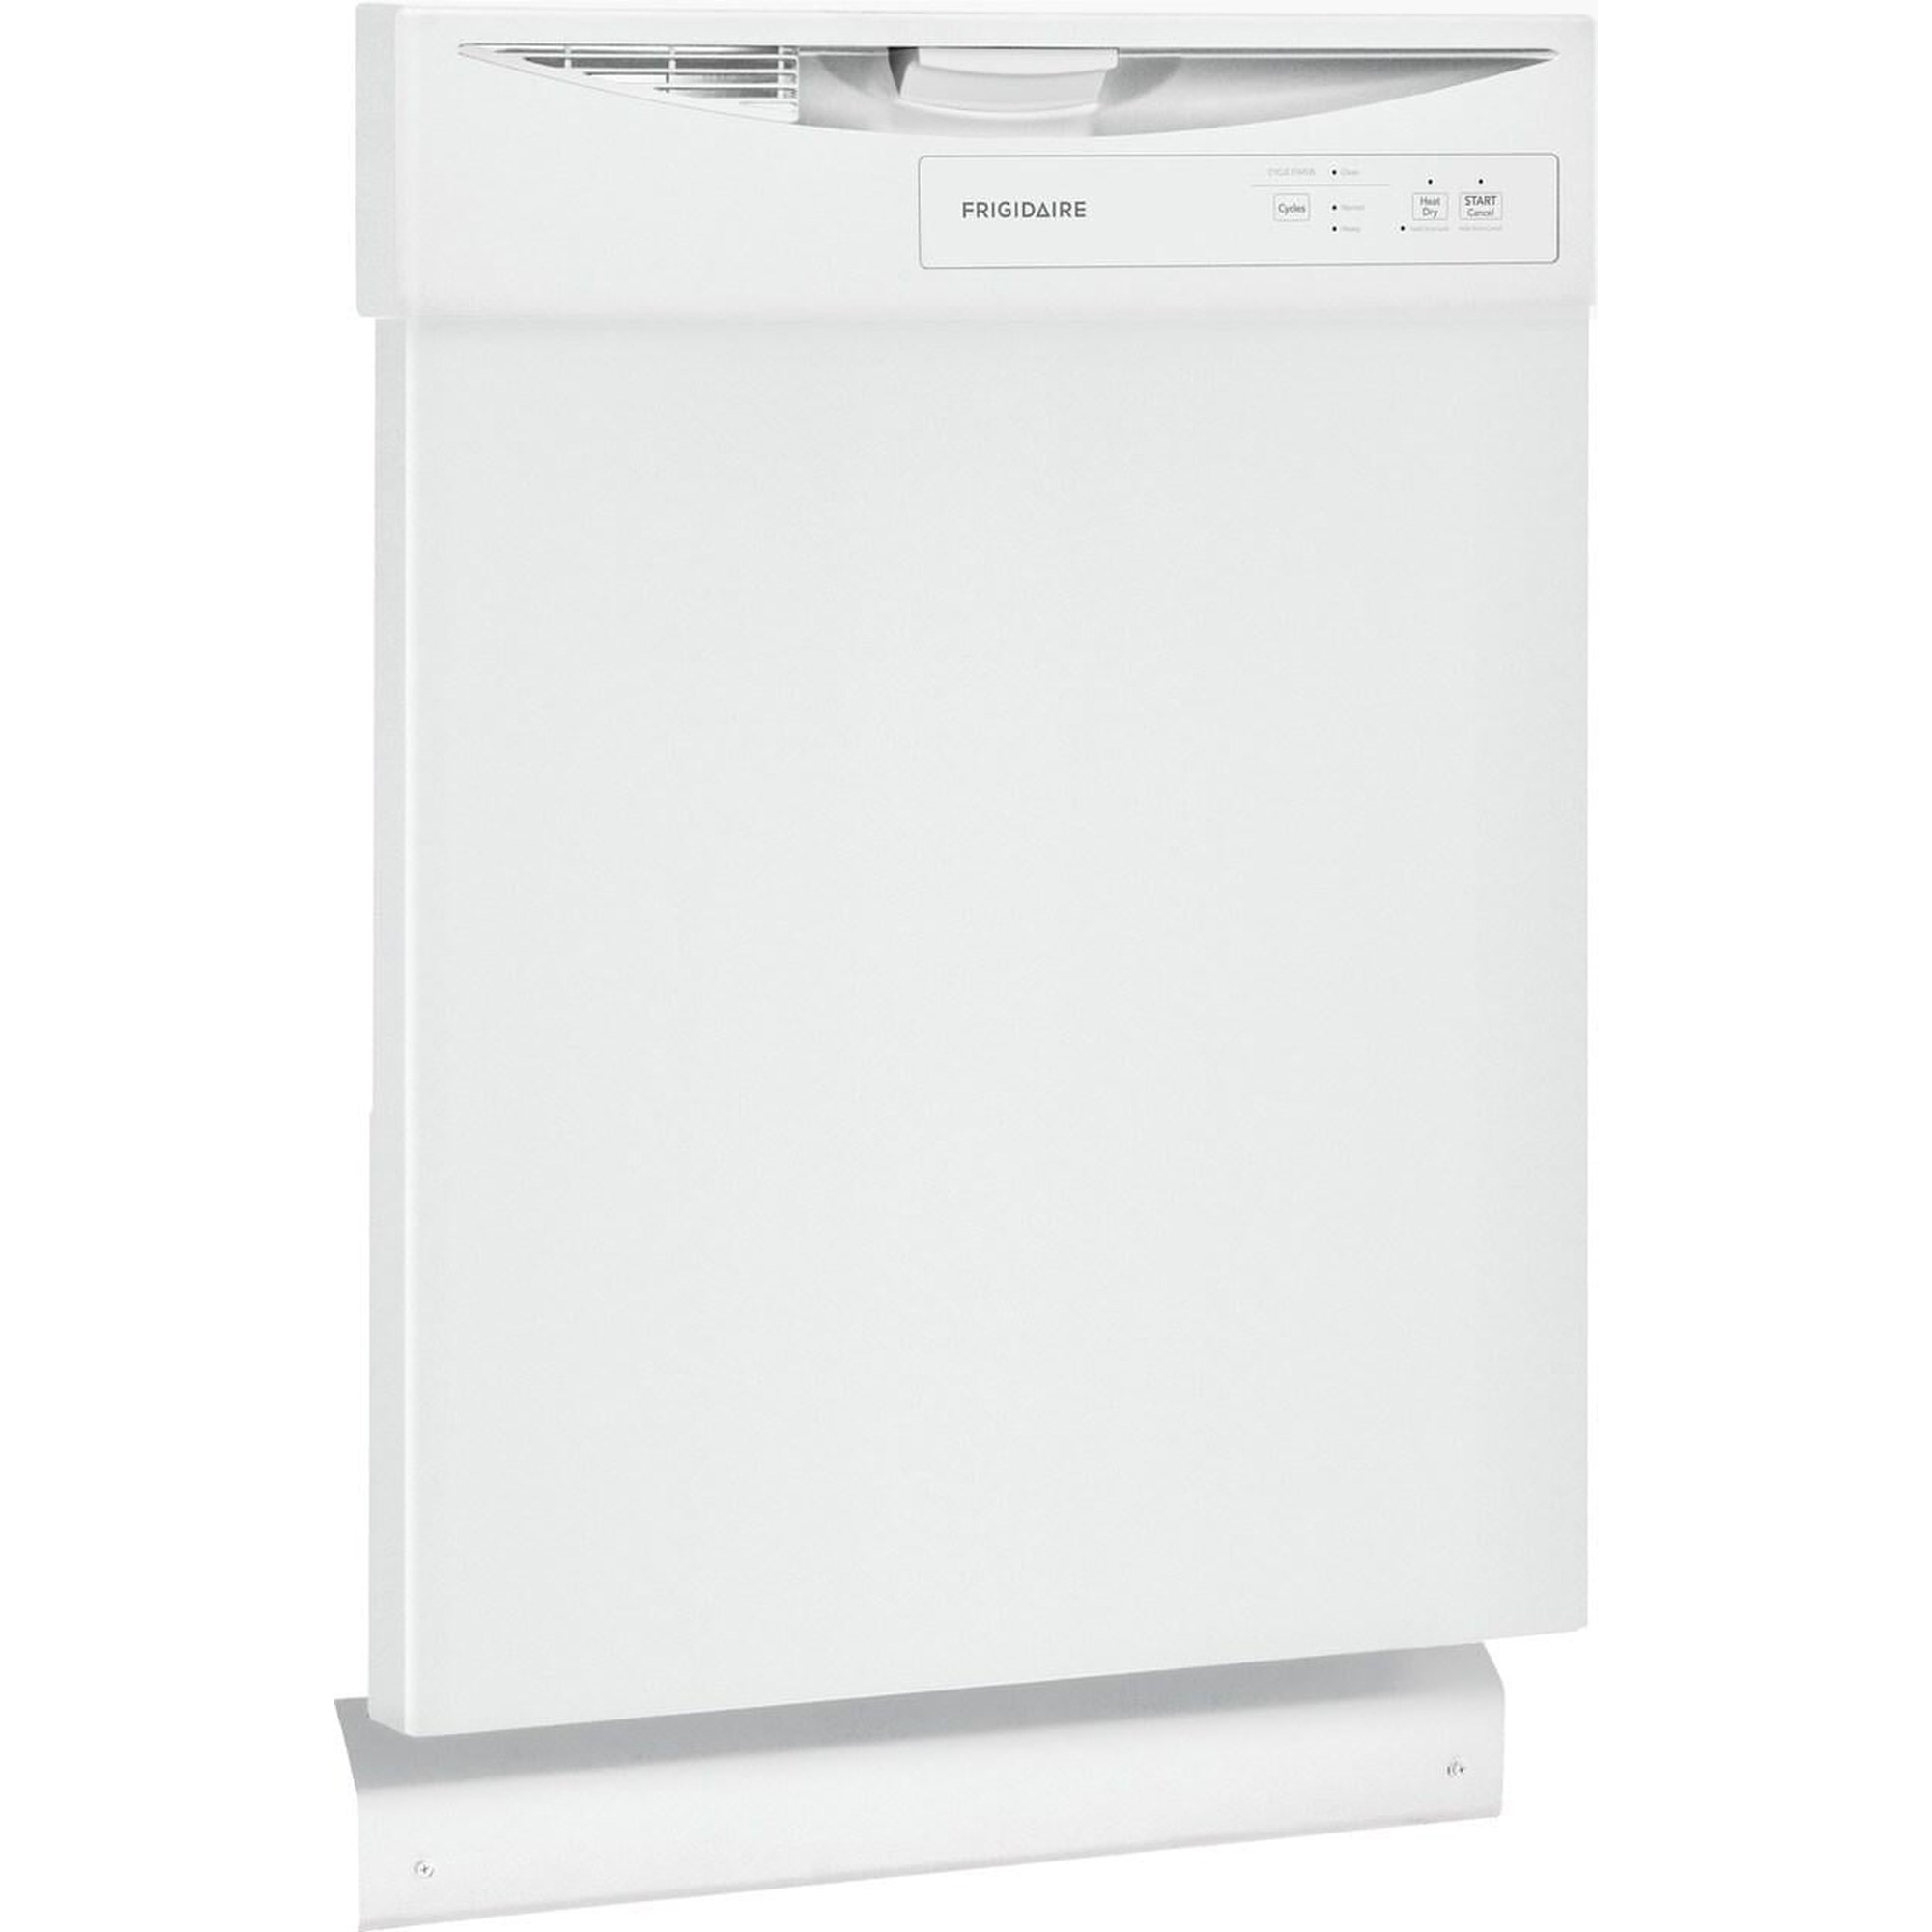 Frigidaire FFCD2413UW 24 Built-In Dishwasher - White